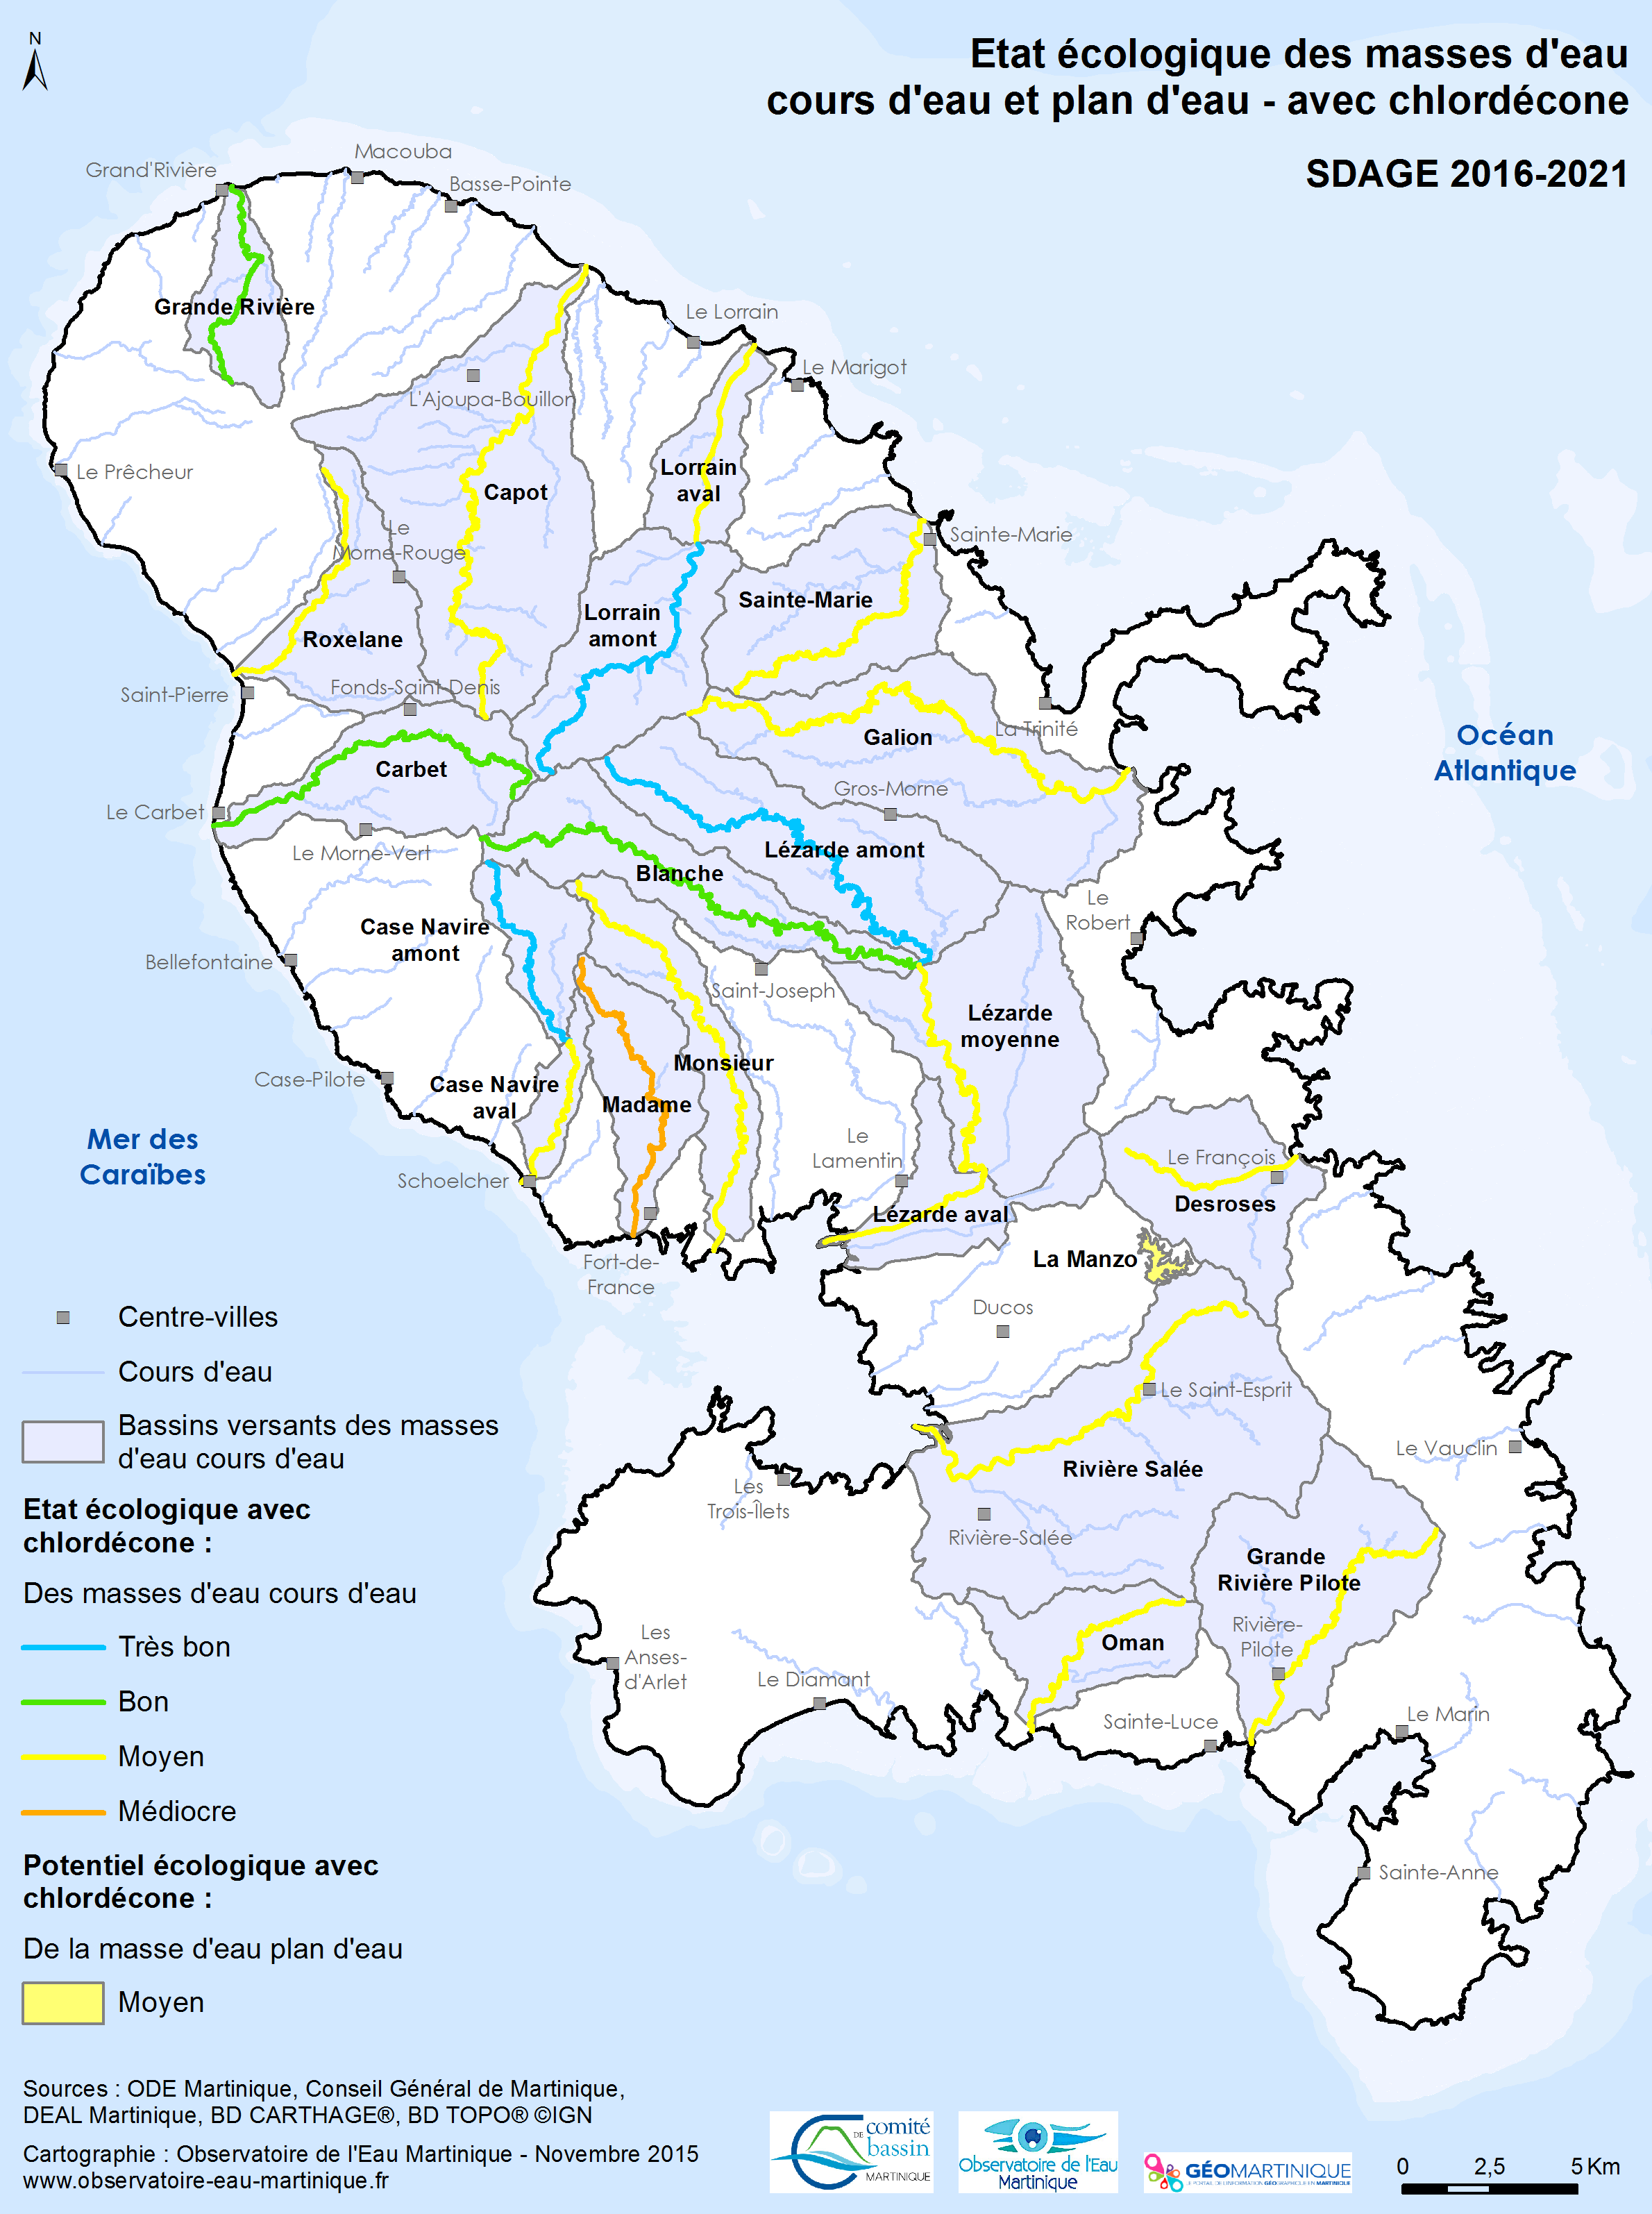 SDAGE 2016-2021 - Etat écologique des masses d'eau cours d'eau et plan d'eau avec chlordécone